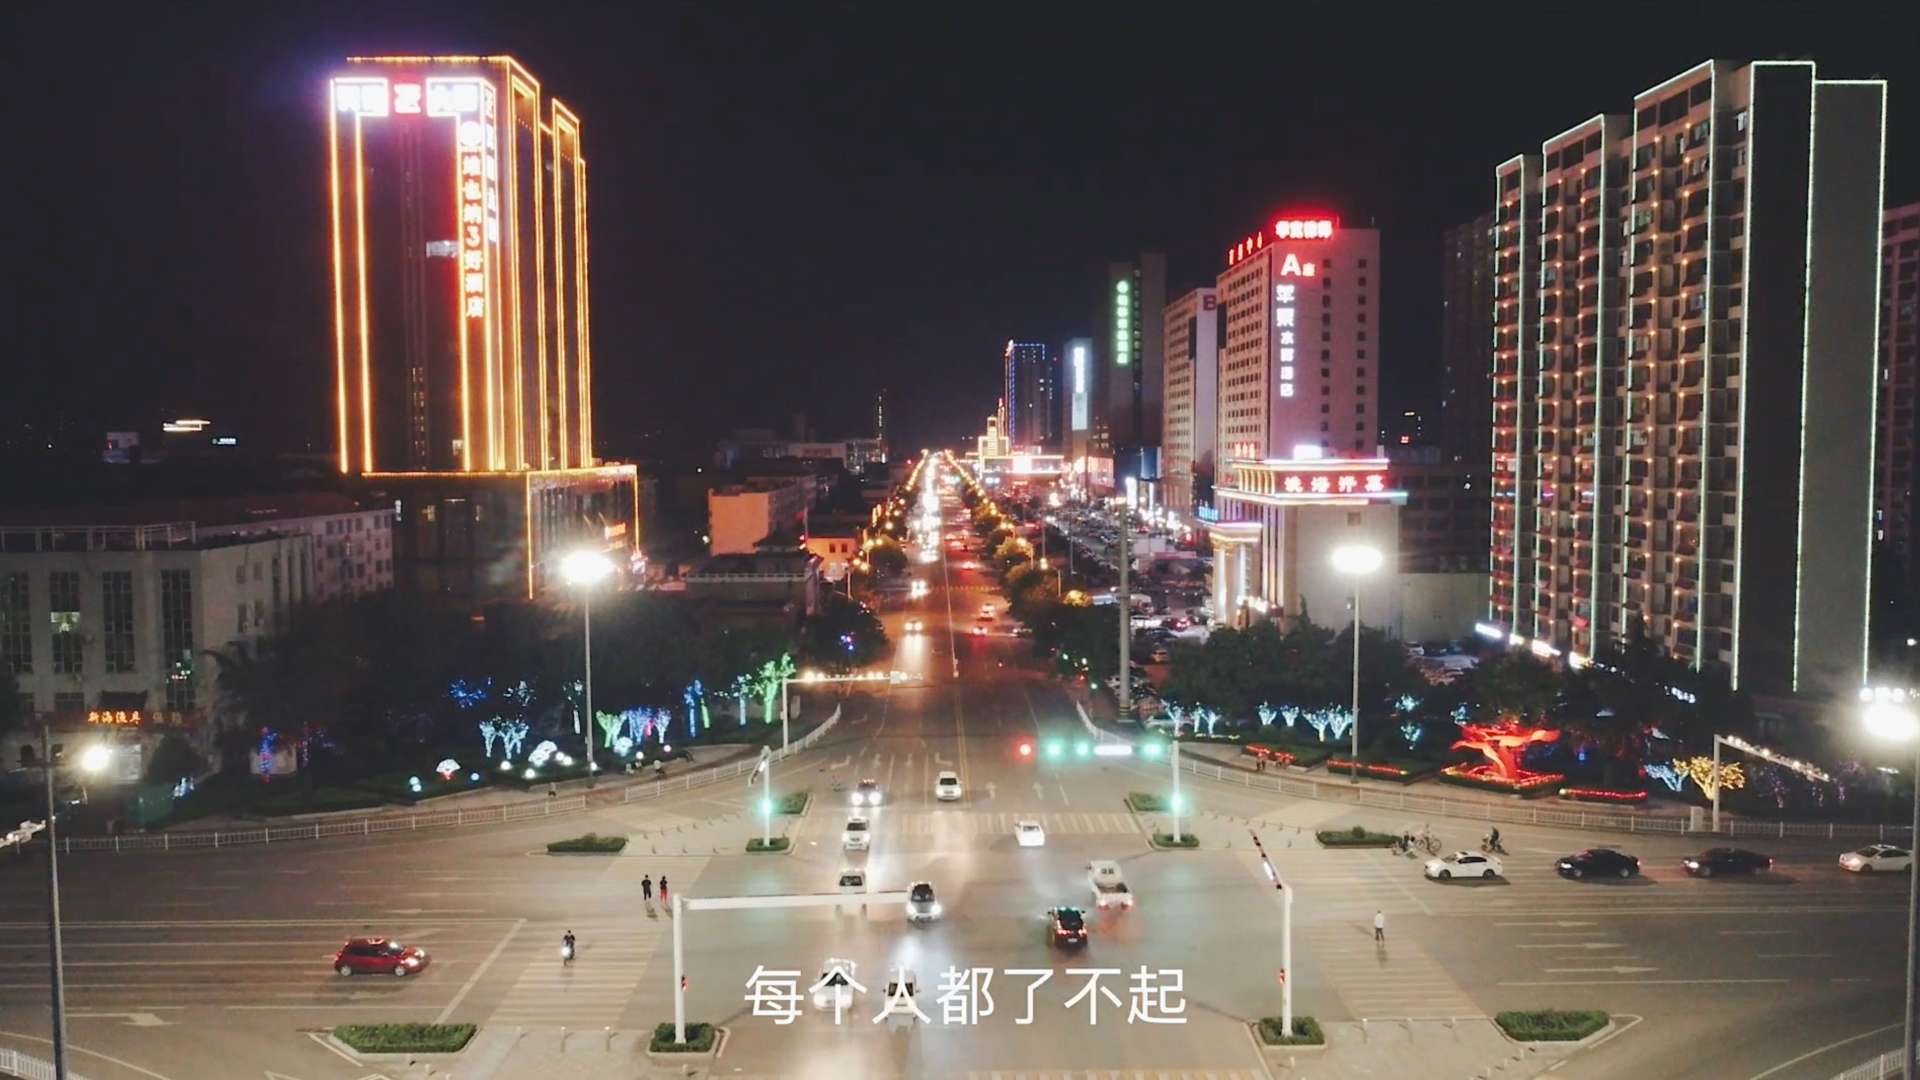 临朐海悦外滩—印象守艺人系列视频——建筑工人篇